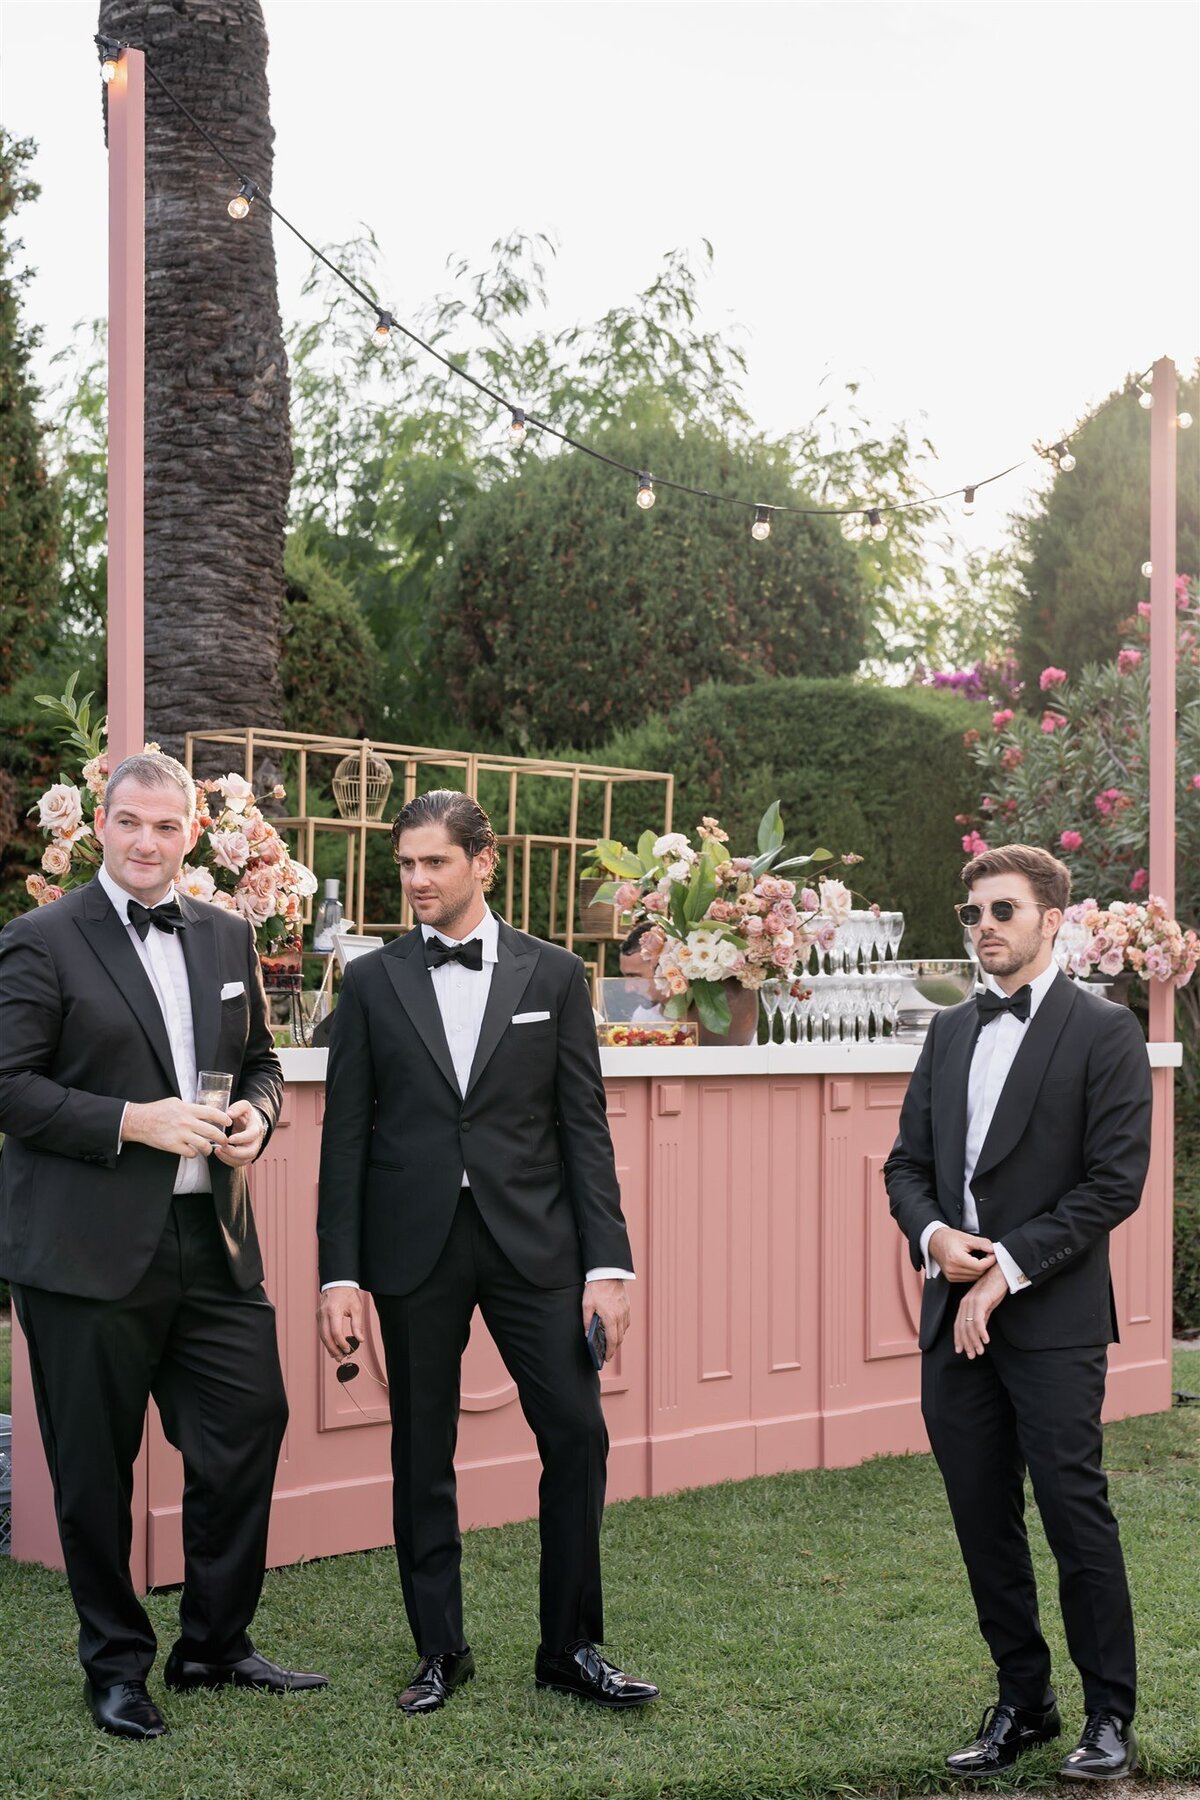 Groomsmen attending outdoor wedding ceremony Villa Ephrussi de Rotschild